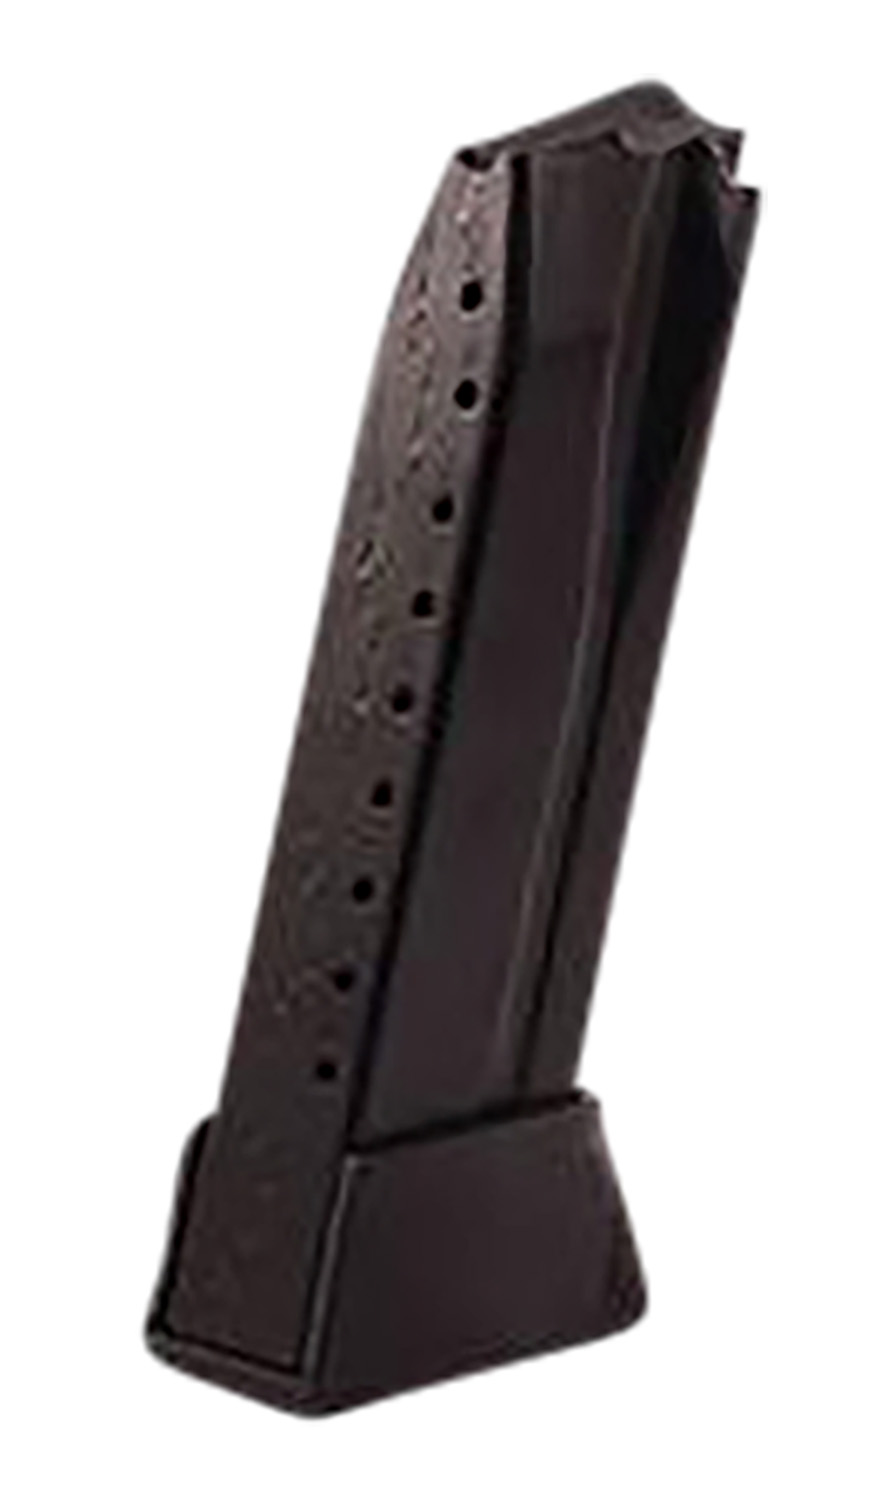 HK 50248620 HK45 Compact 10rd Extended Floorplate Black Steel-img-0